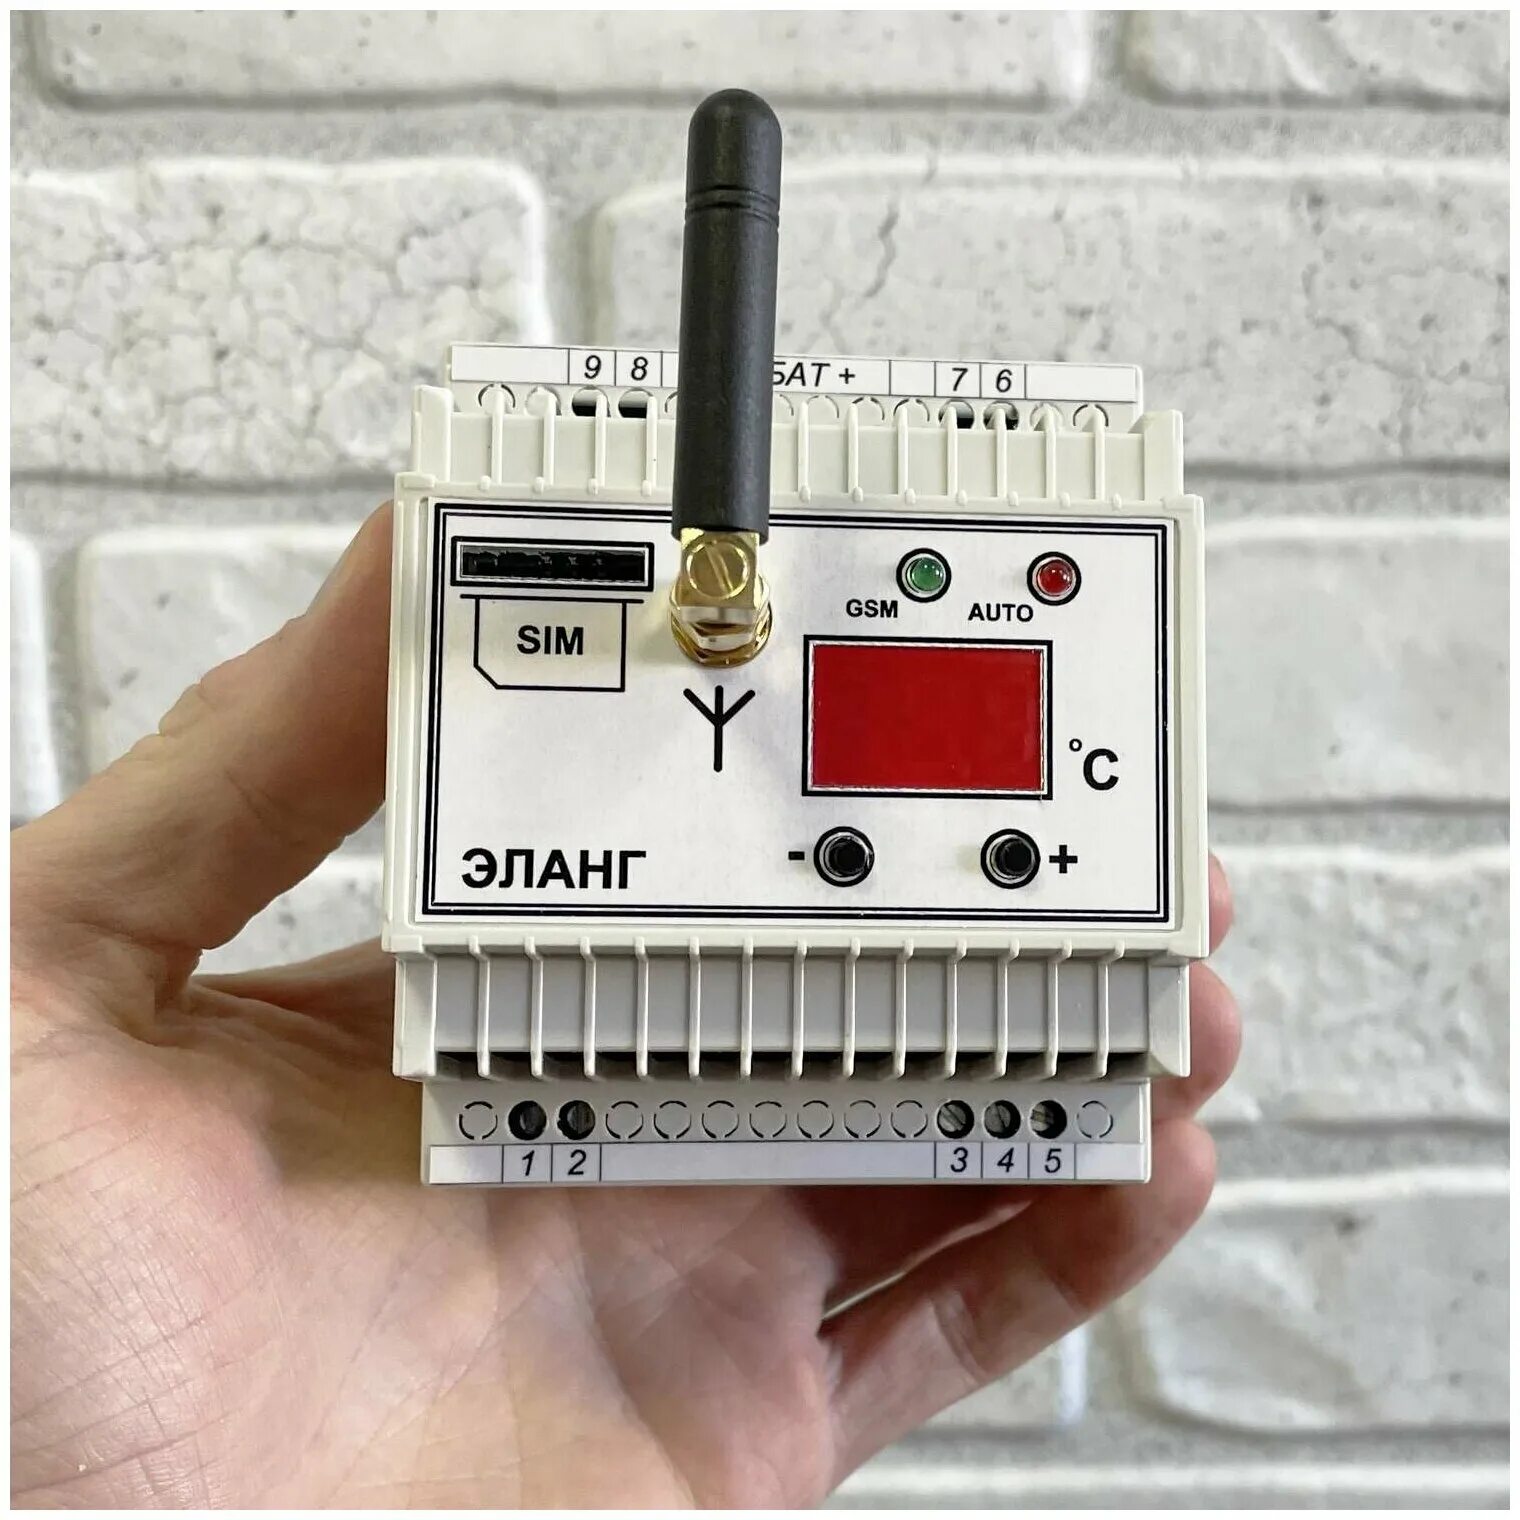 Модель gsm. GSM реле Elang. GSM-реле Elang POWERCONTROL. Однофазное GSM реле Elang Power. GSM реле Эланг Thermo Control.